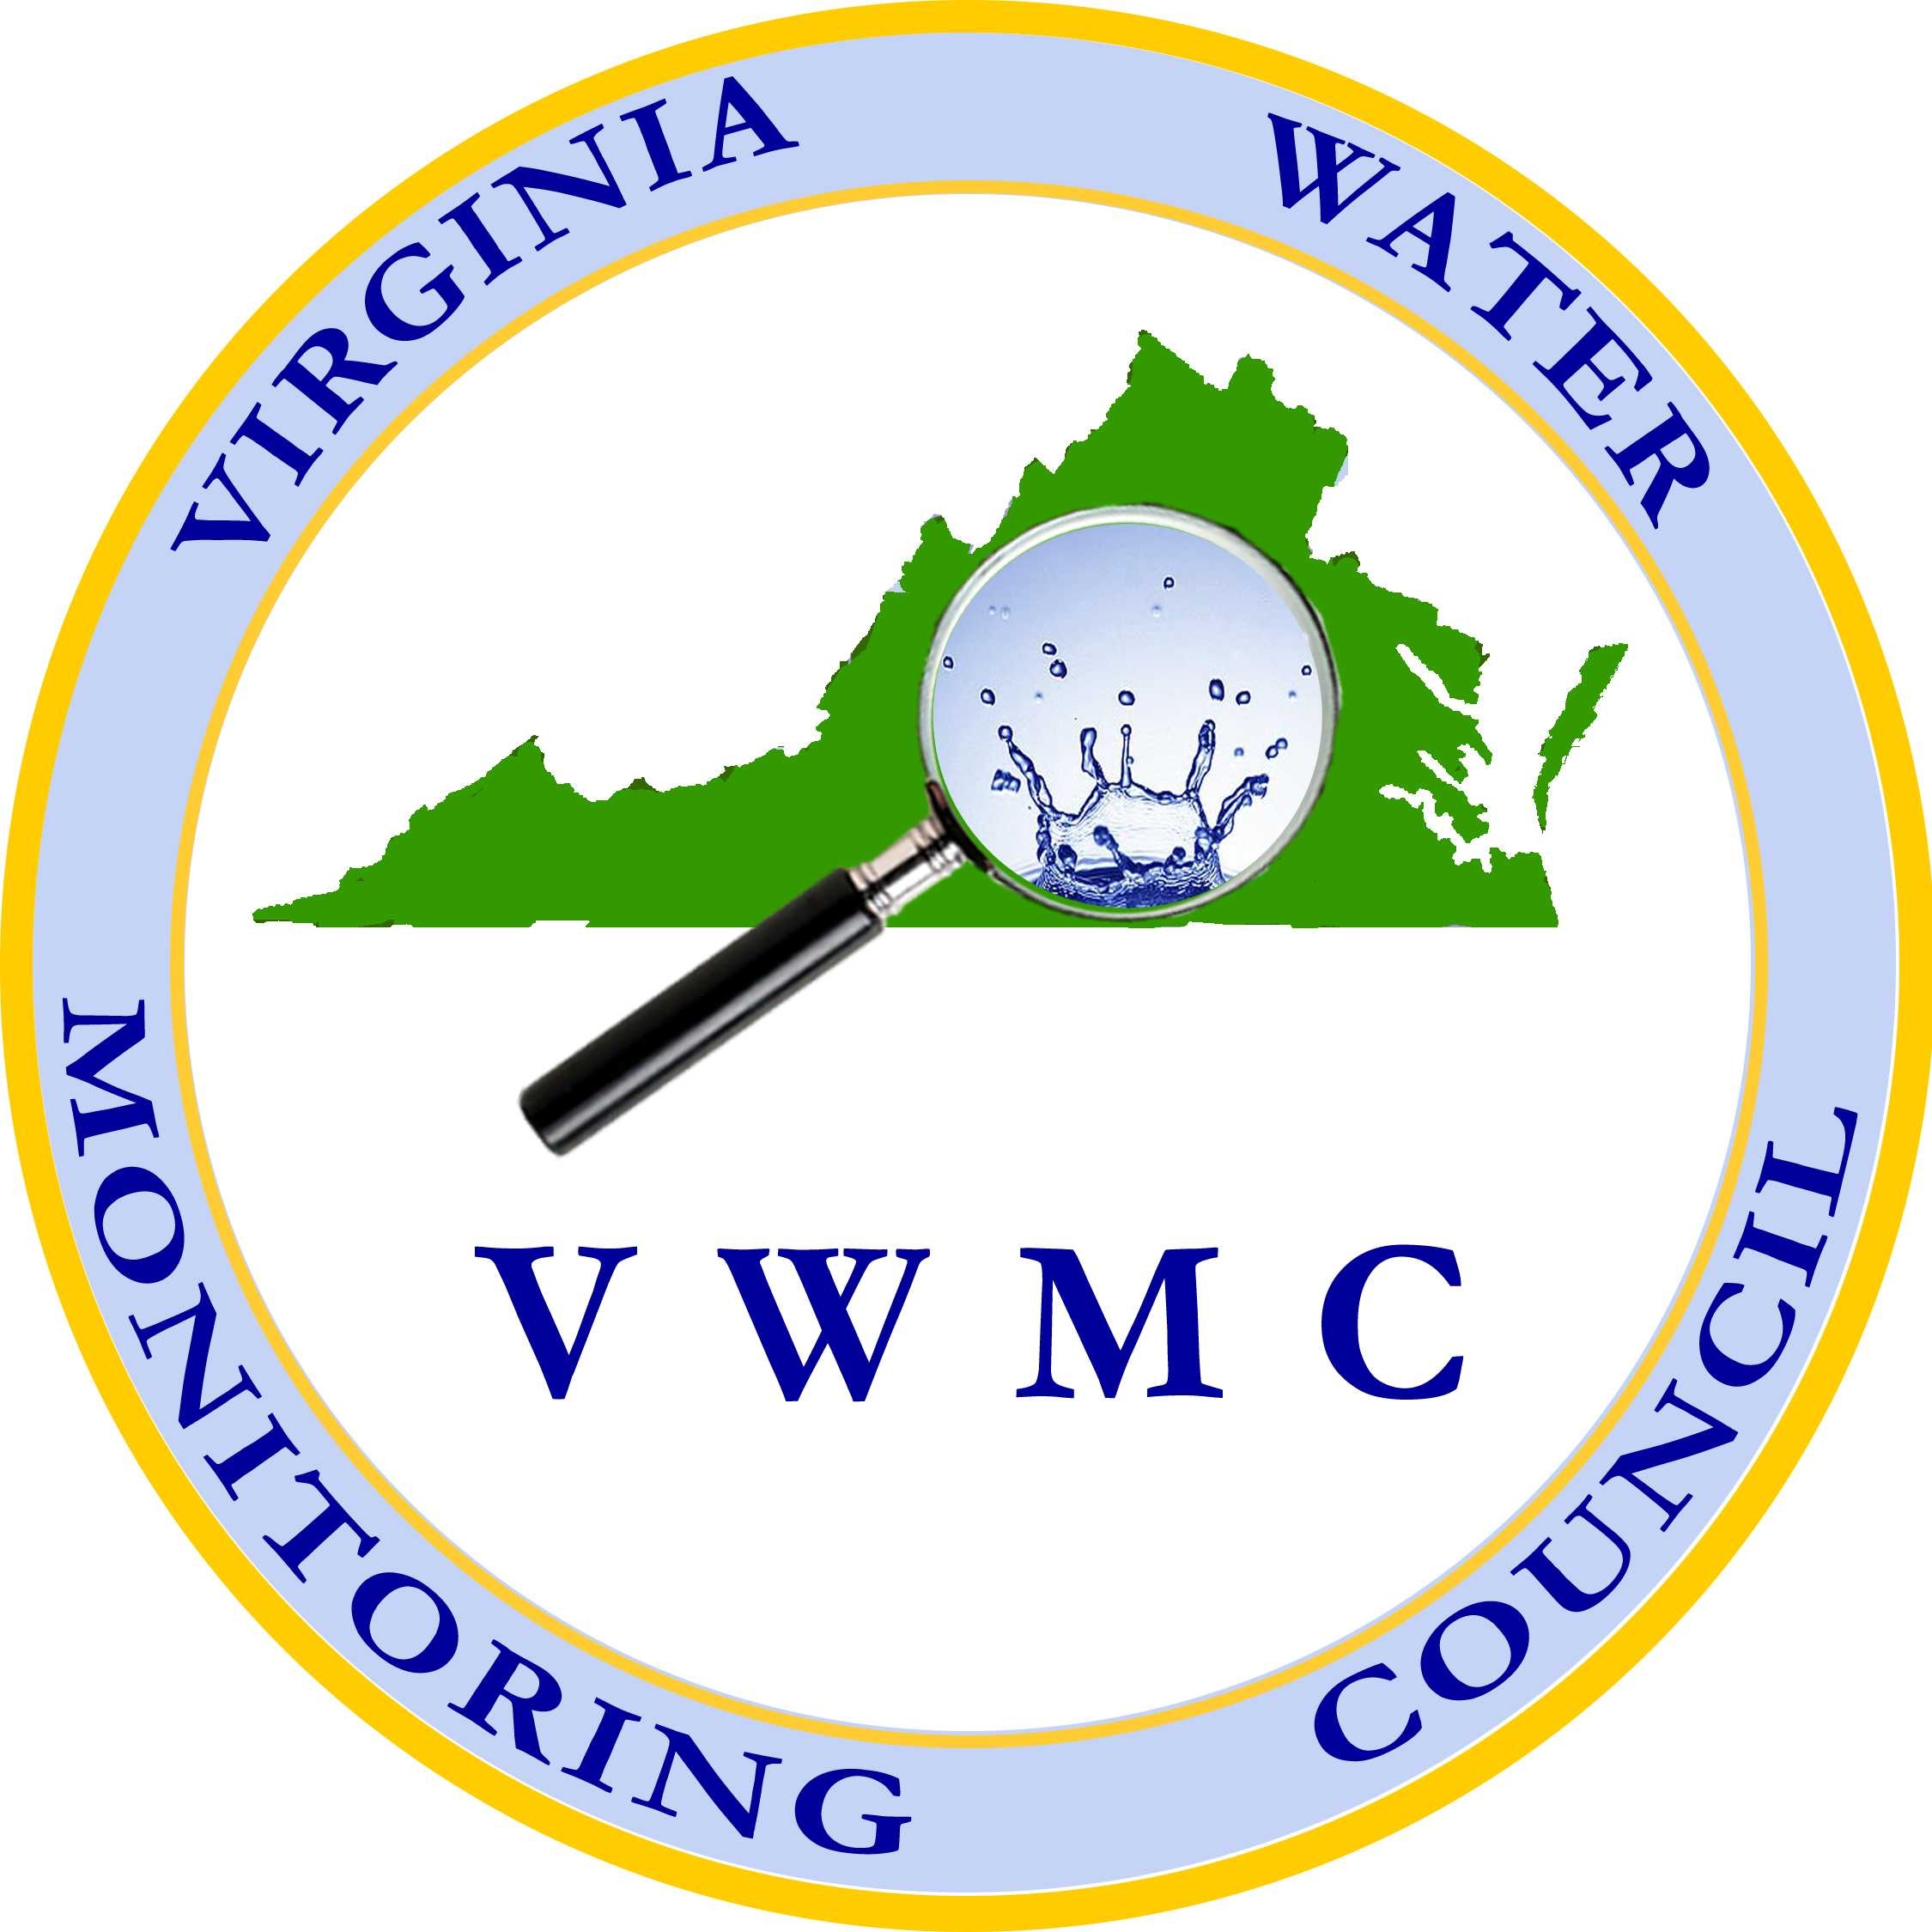 VWMC logo